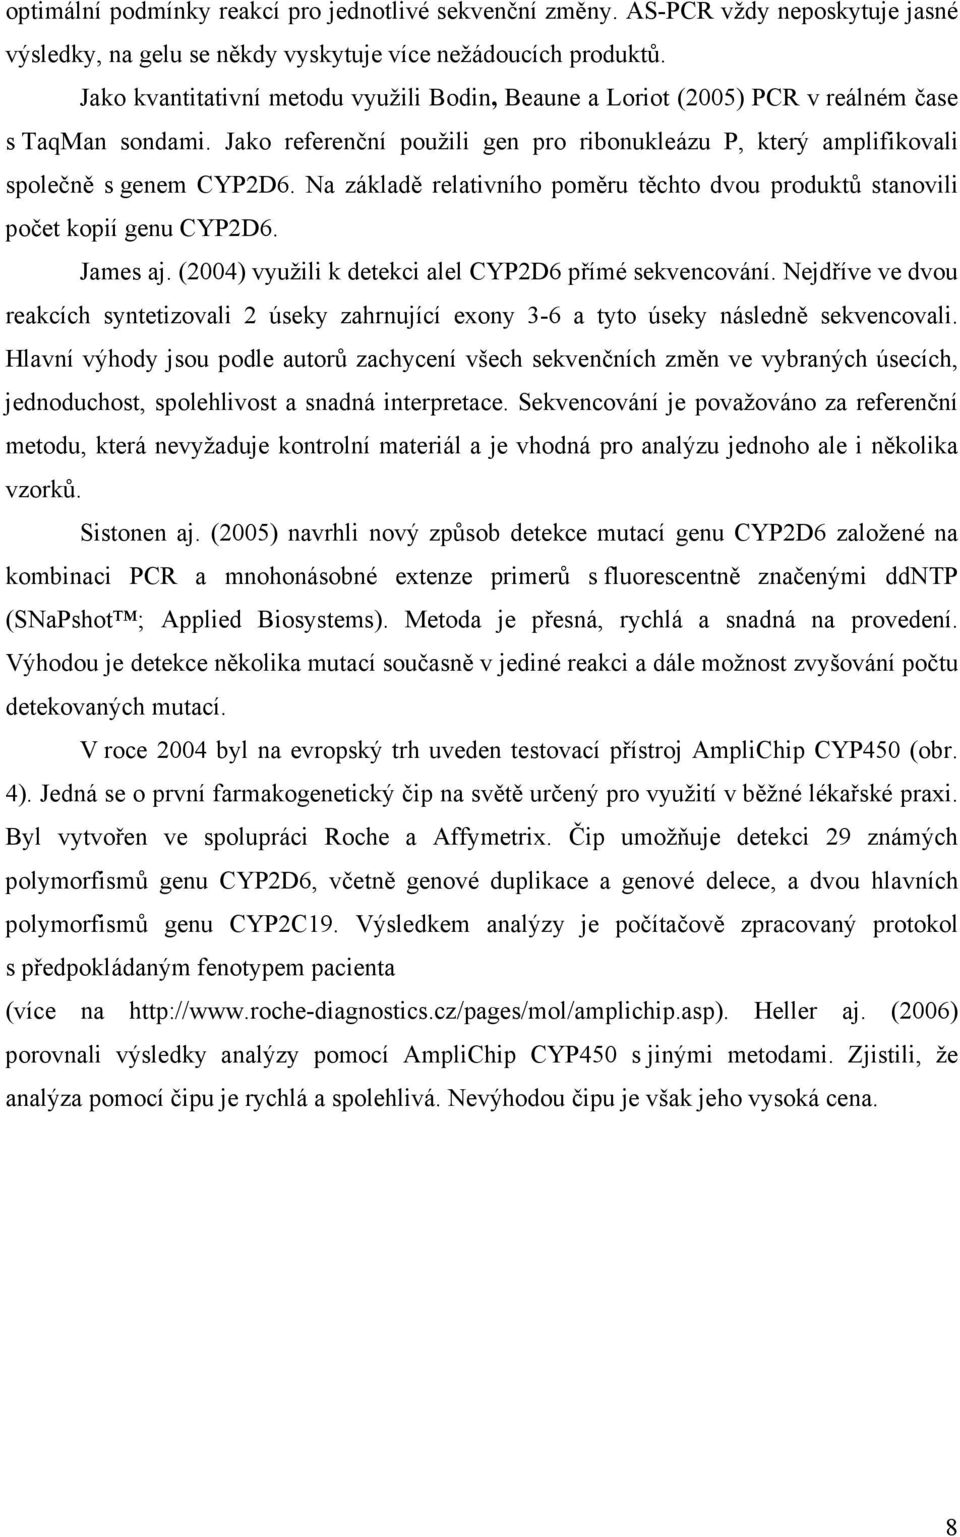 Na základě relativního poměru těchto dvou produktů stanovili počet kopií genu CYP2D6. James aj. (2004) využili k detekci alel CYP2D6 přímé sekvencování.